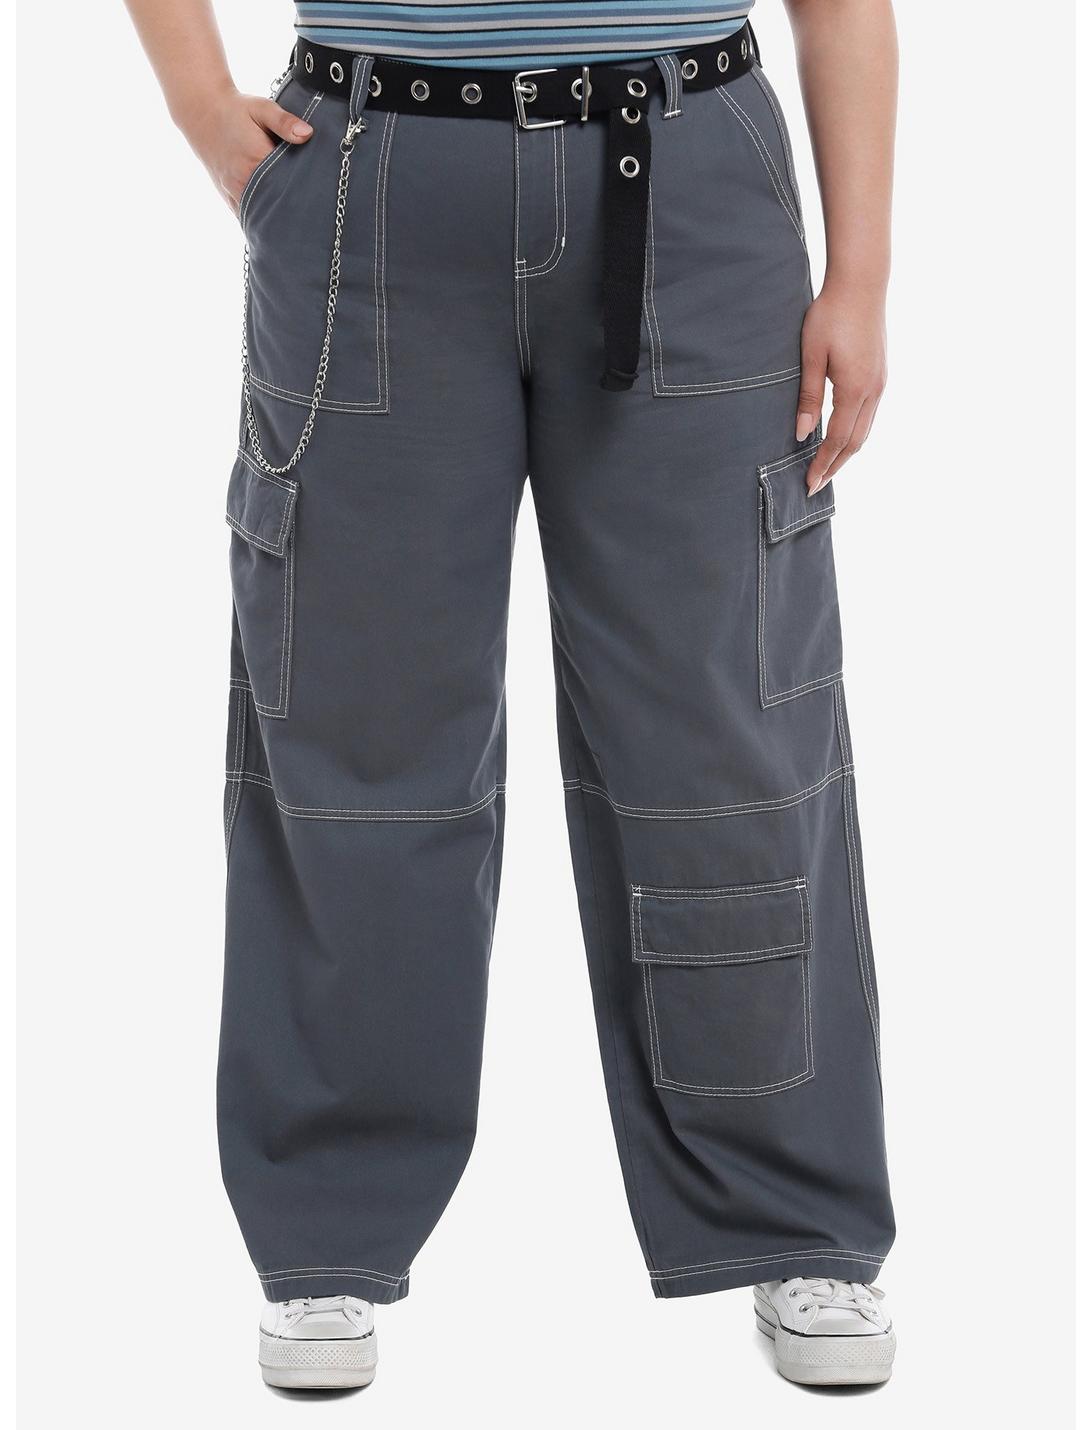 Blue Side Chain Carpenter Pants With Belt Plus Size, BLACK, hi-res